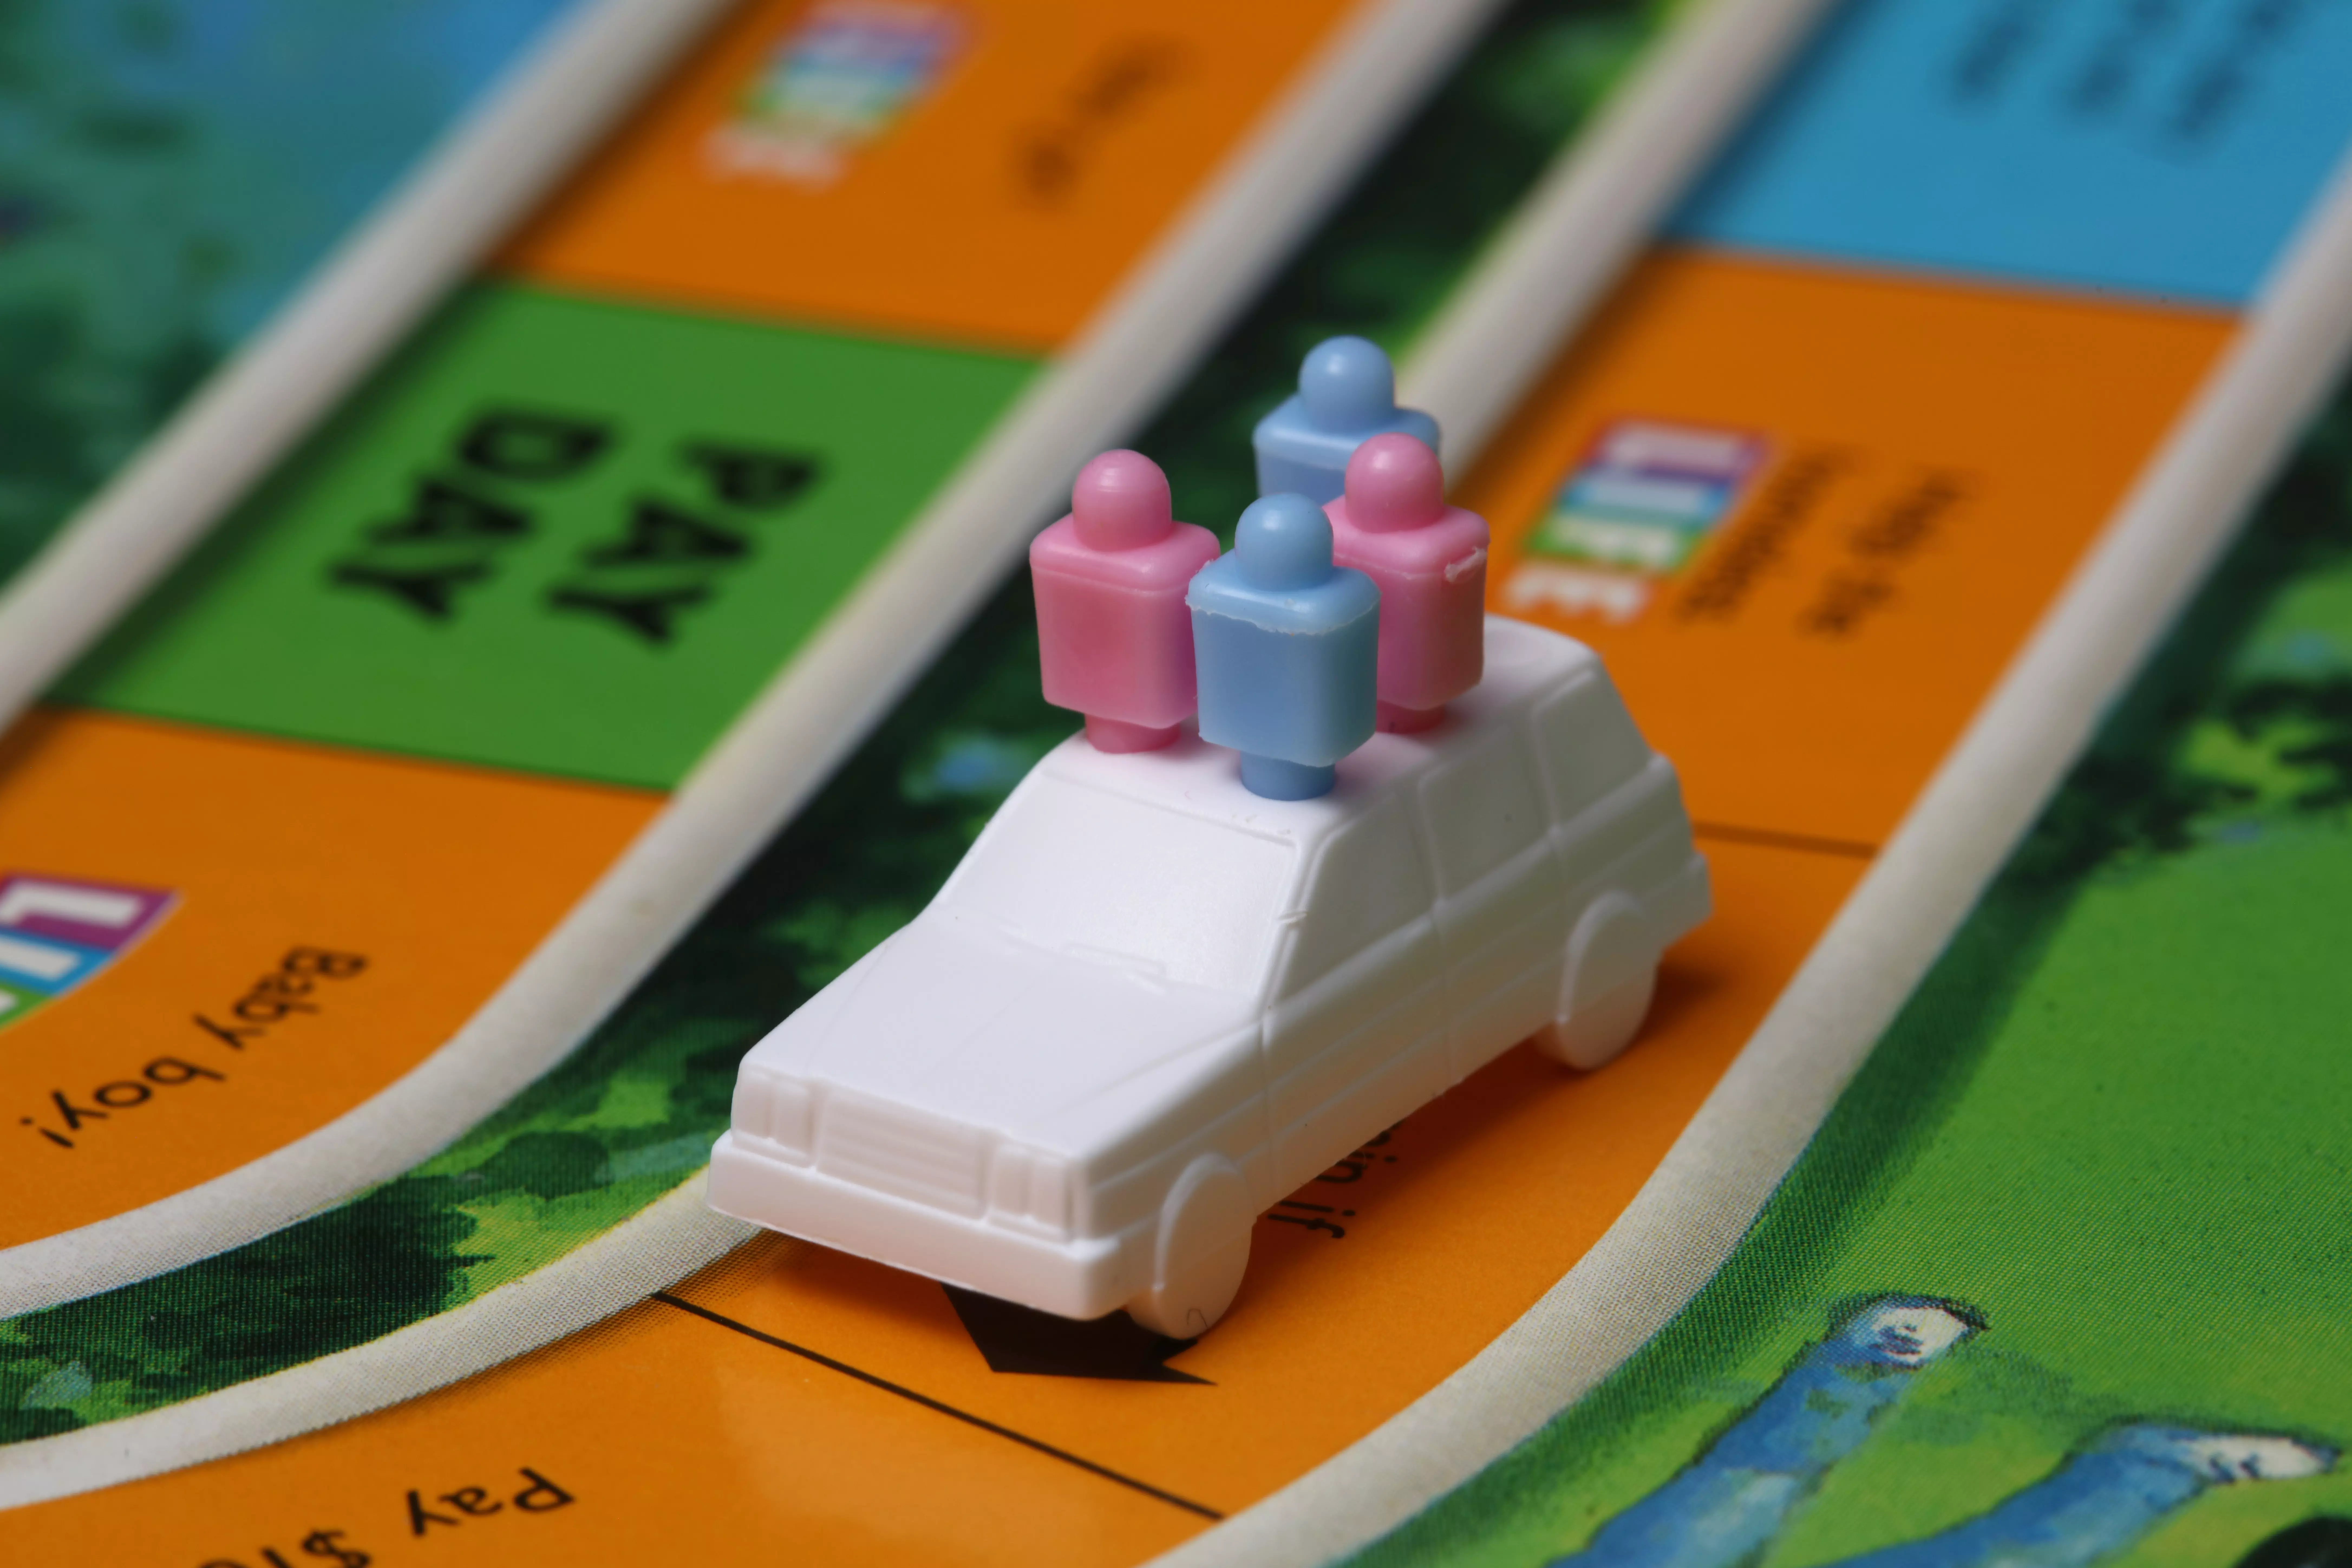 Monopoly Junior - jeu Parker 1992 - jouets rétro jeux de société